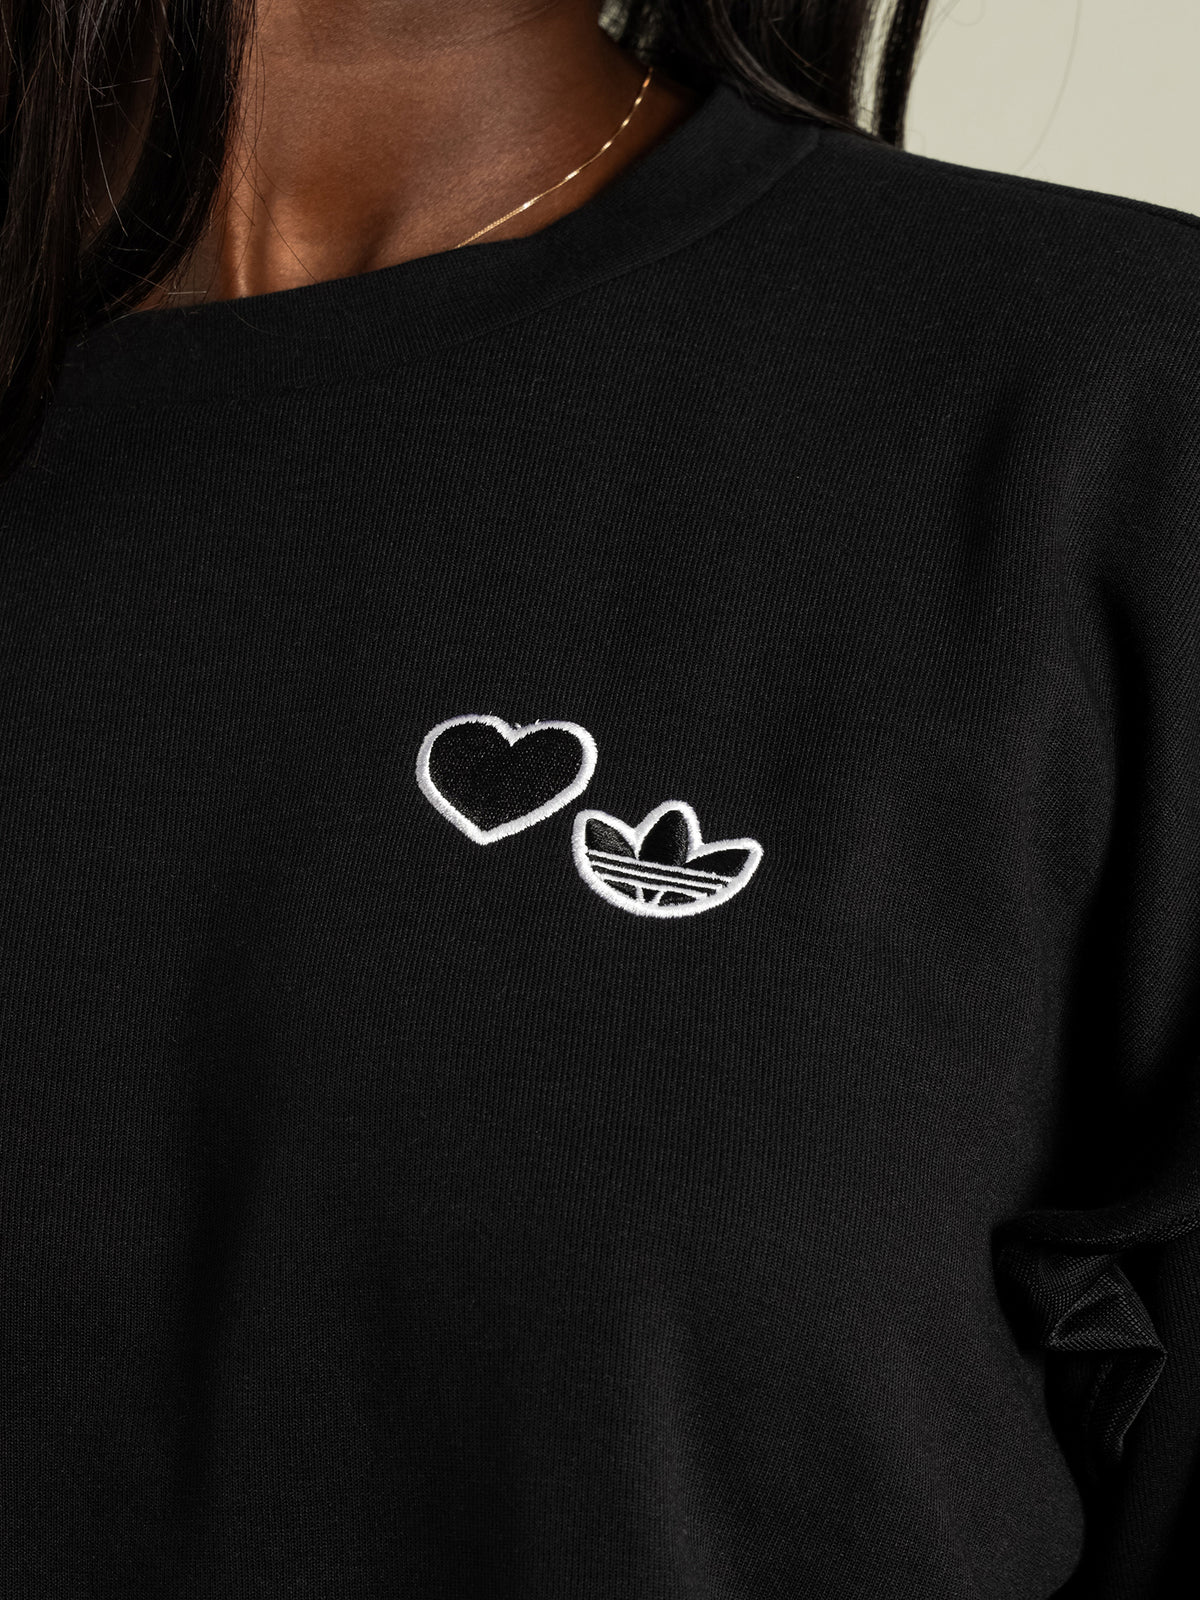 Love Heart Crewneck Sweatshirt in Black